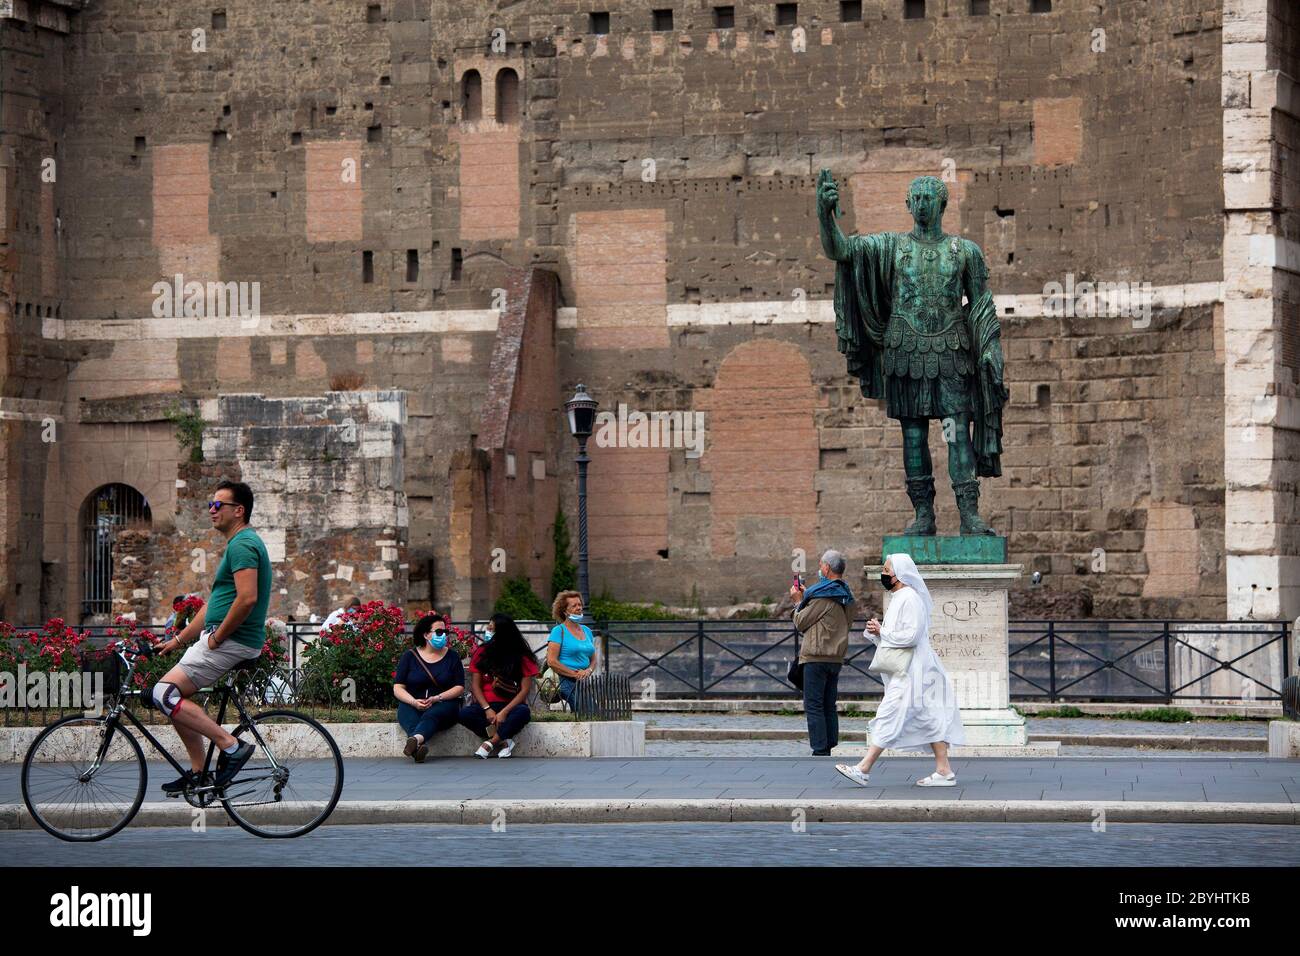 Riapertura Italia, avvio fase 3. Le persone che indossano maschere protettive camminano in via fori Imperiali vicino al Colosseo (Colosseo) a Roma, Italia, martedì 02 giugno 2020. Foto Stock